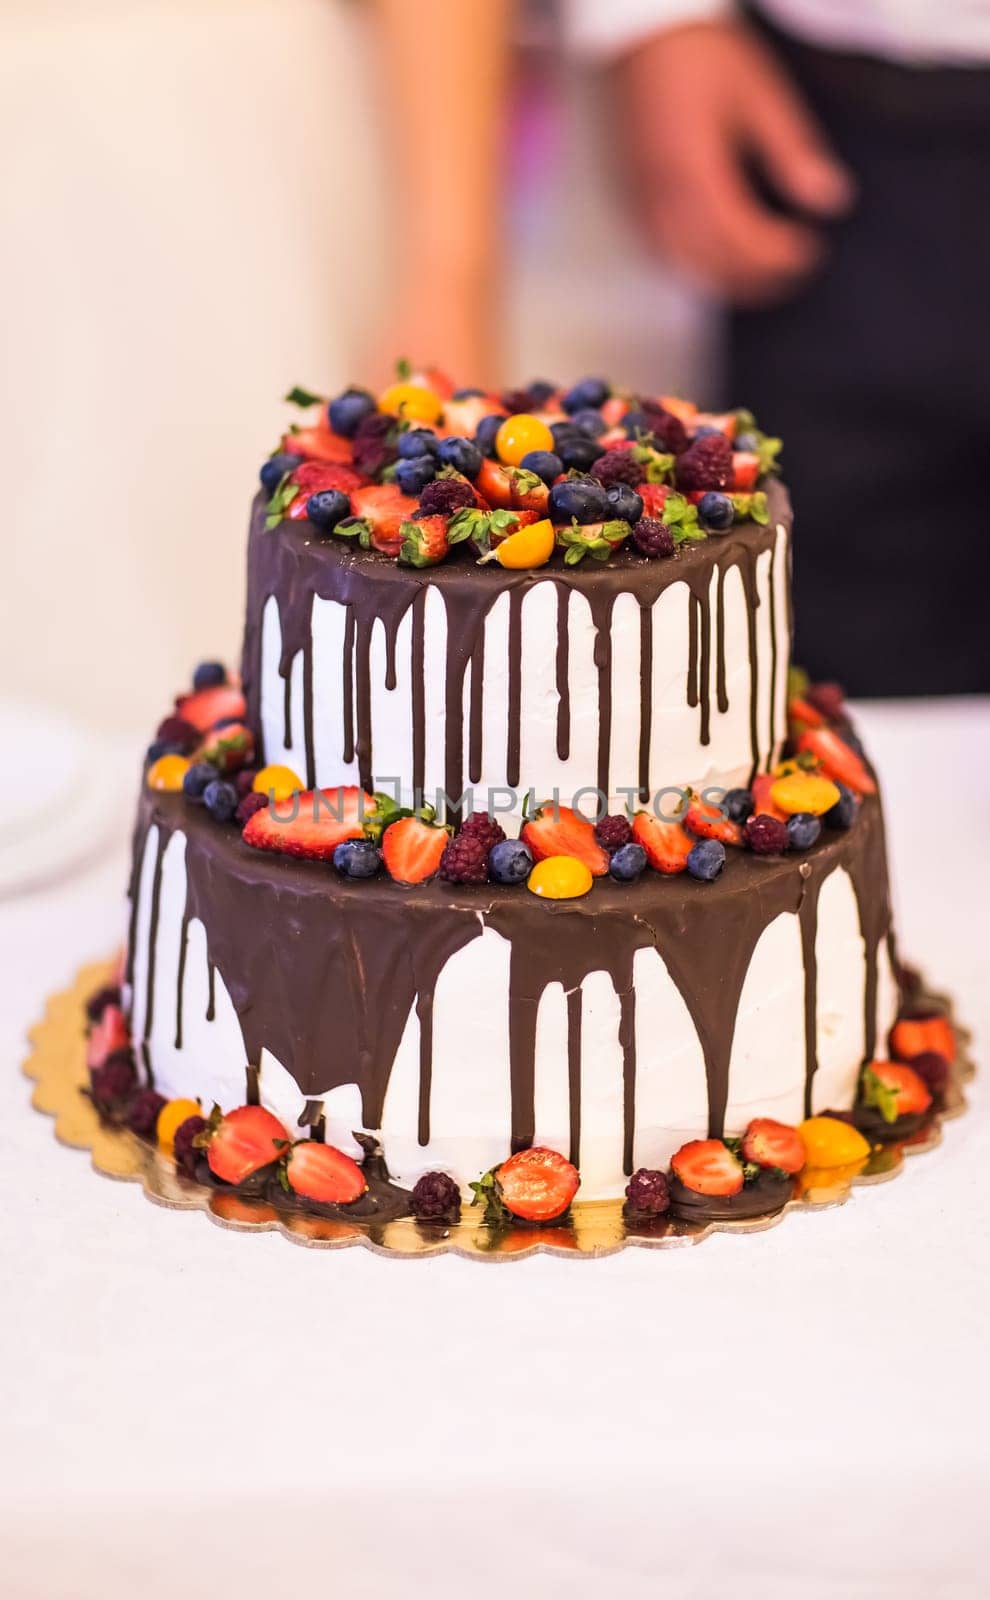 Chocolate Wedding Cake by Satura86